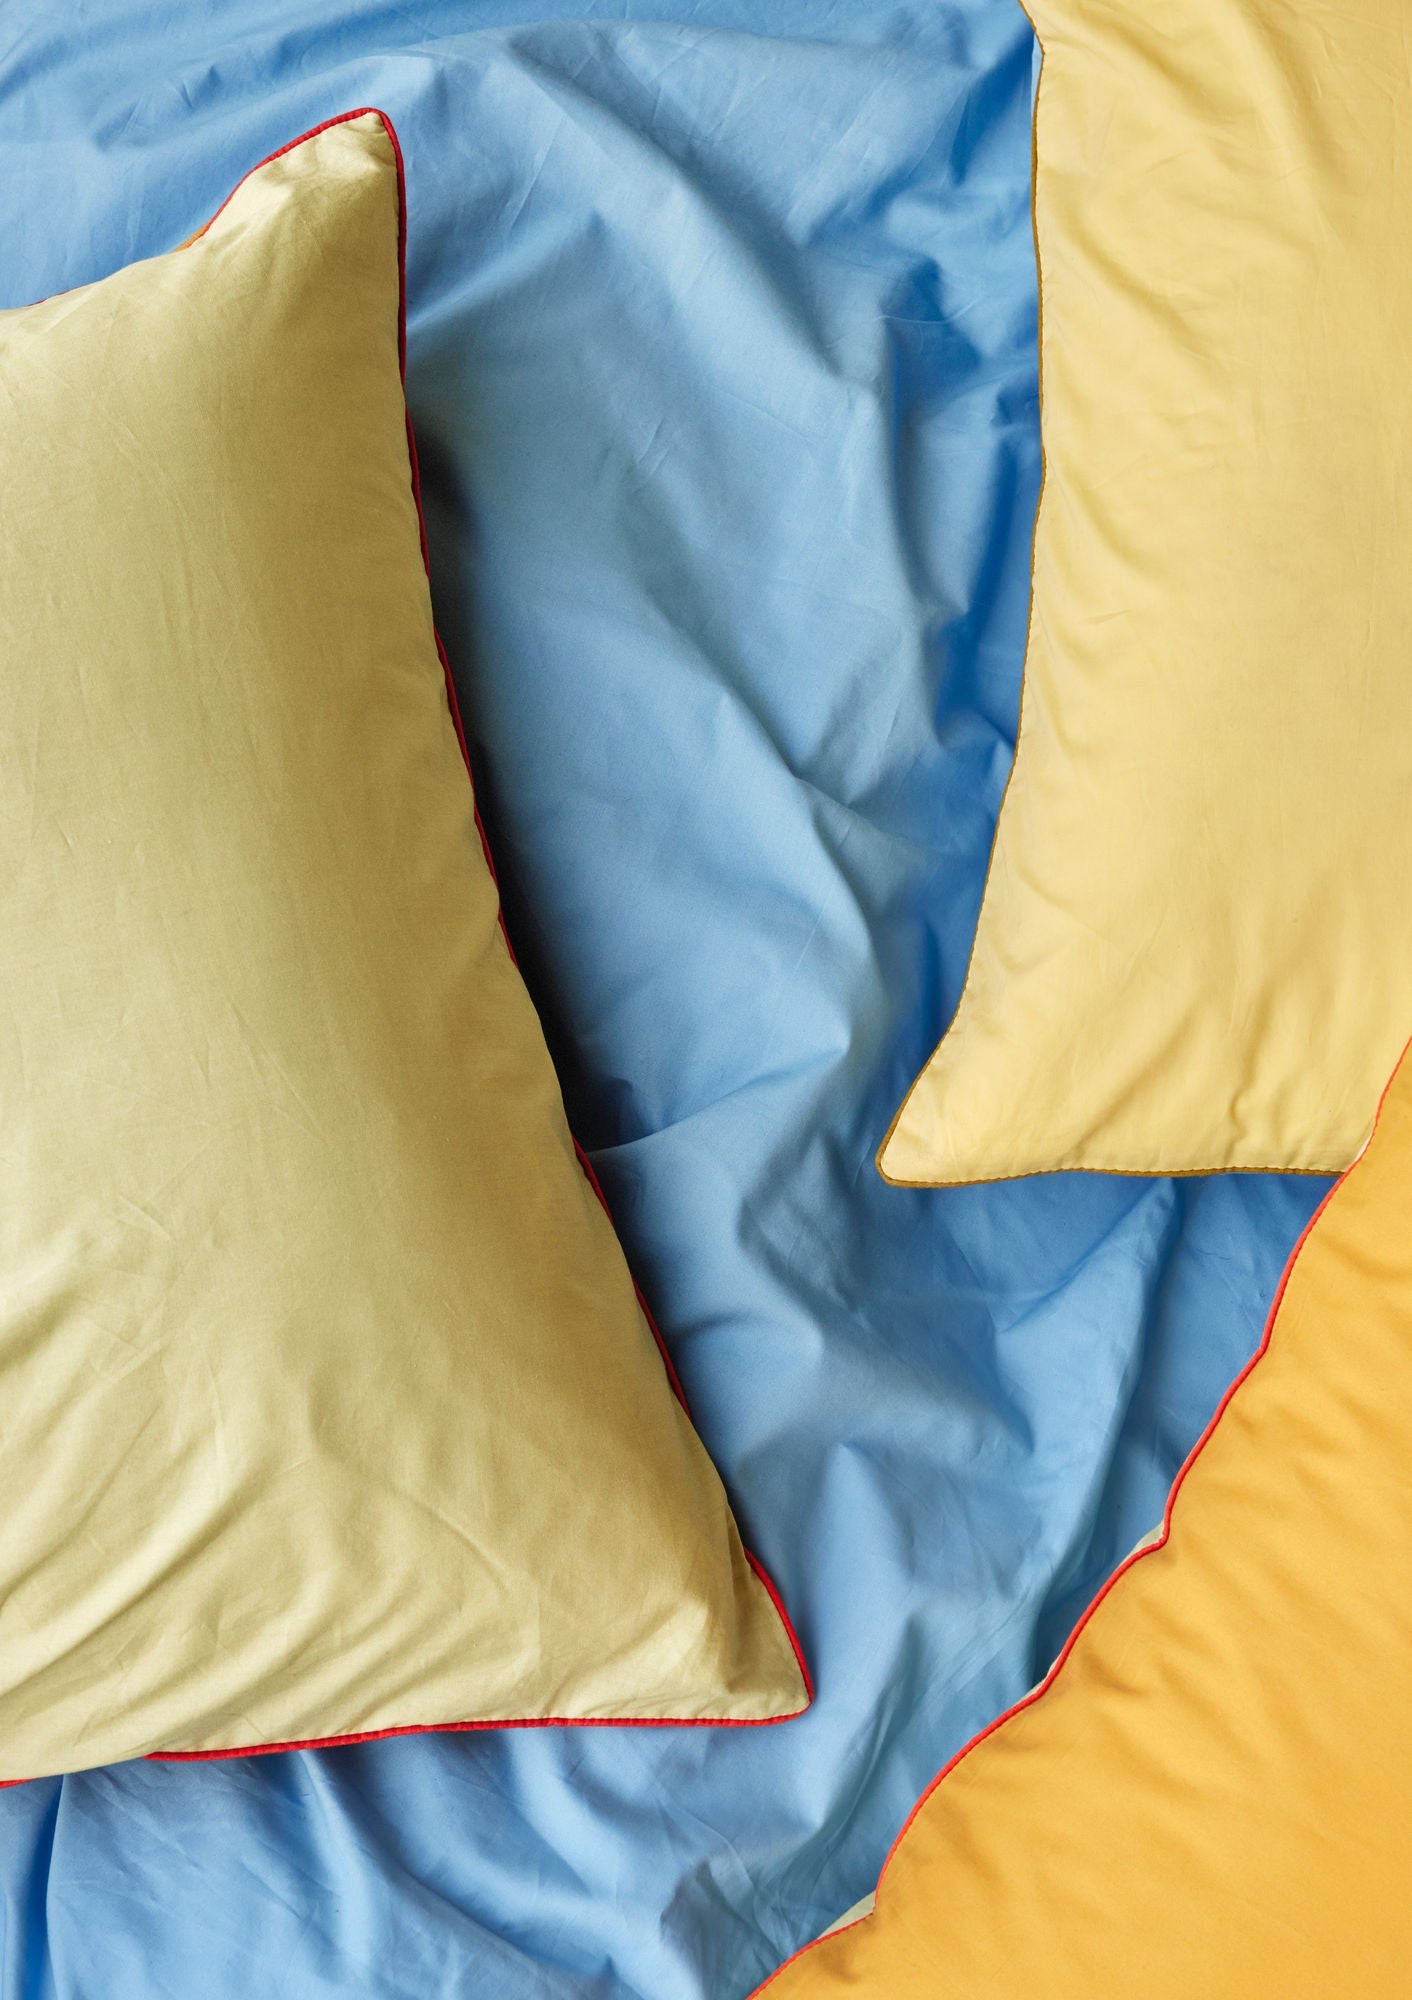 Hübsch Aki sängkläder 60/200 blå/gul